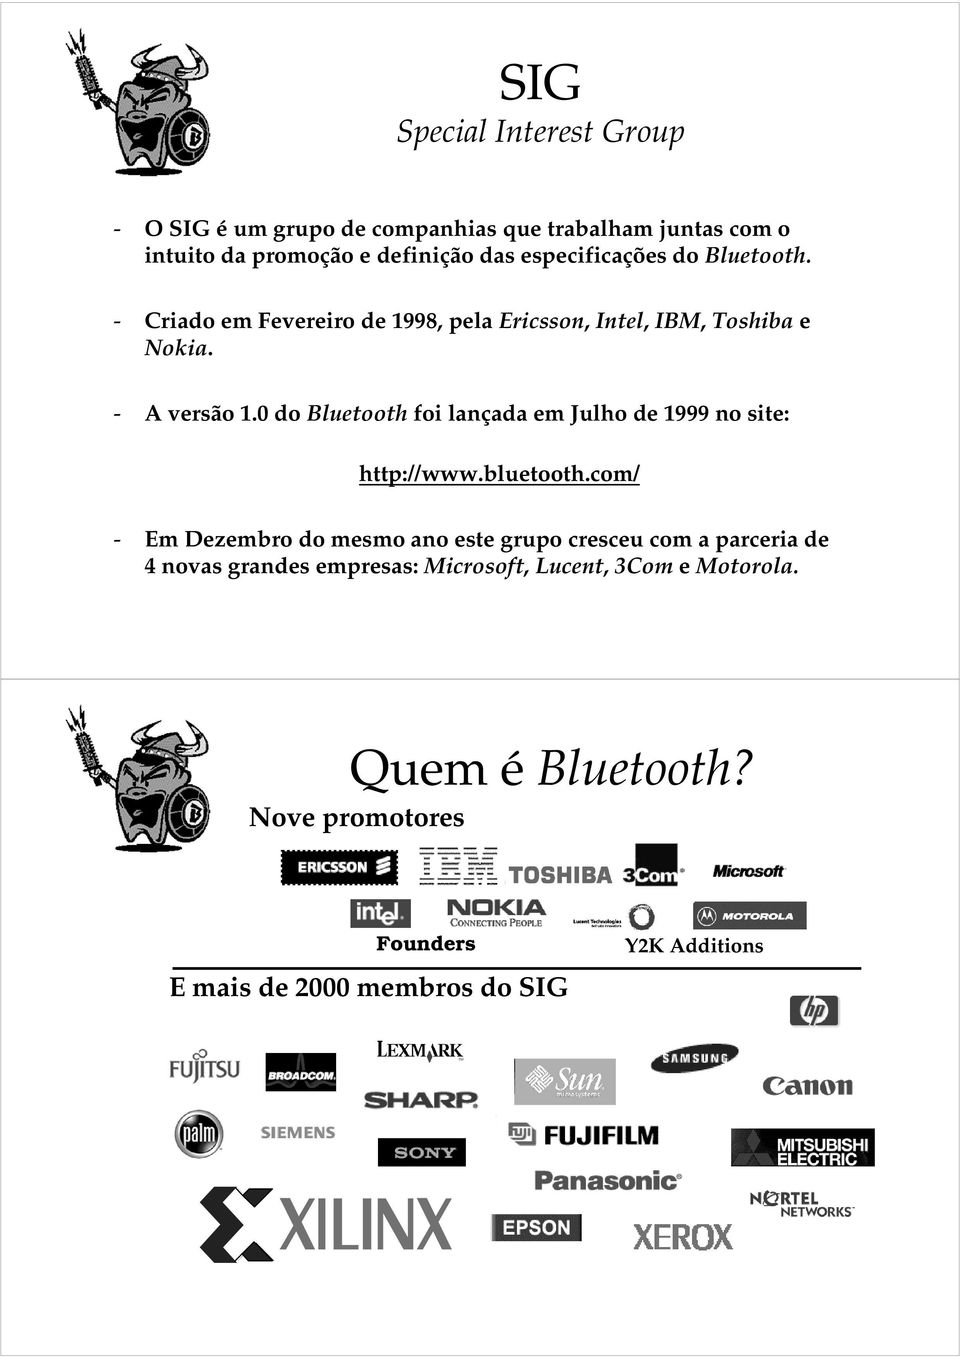 0 do Bluetooth foi lançada em Julho de 1999 no site: http://www.bluetooth.